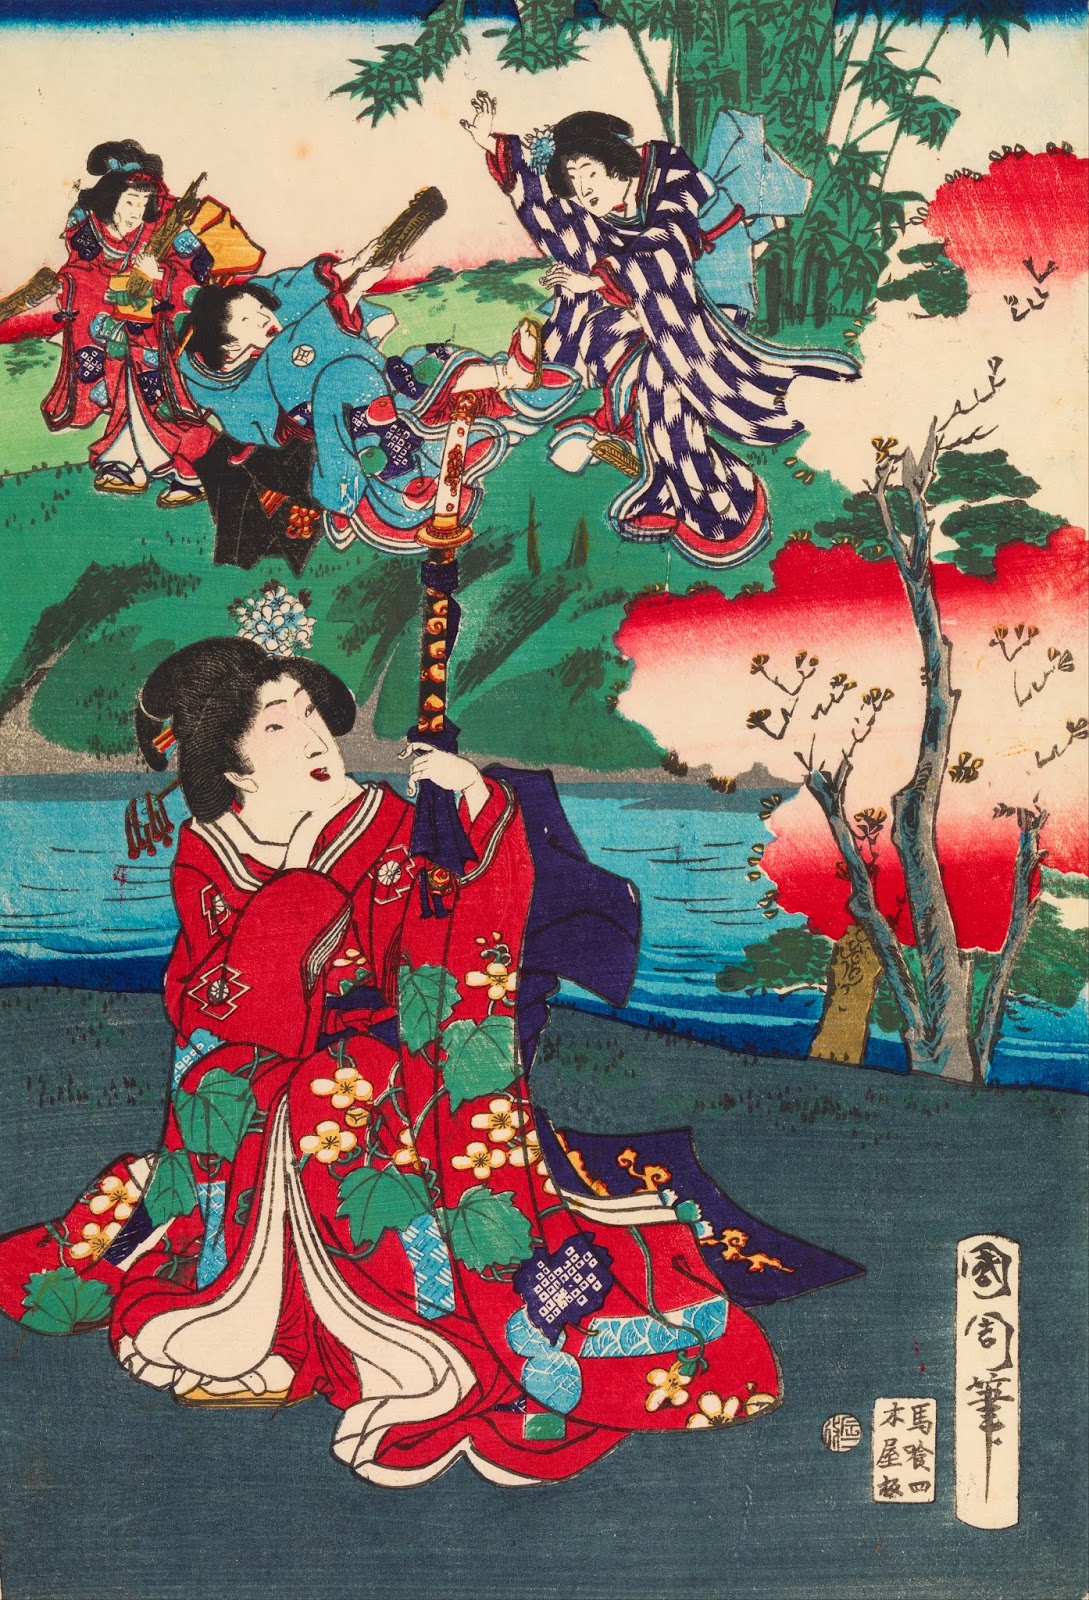 Gendzsi szerelmei by Toyohara Kunichika - 1868 - 25,2 x 36,5 cm 